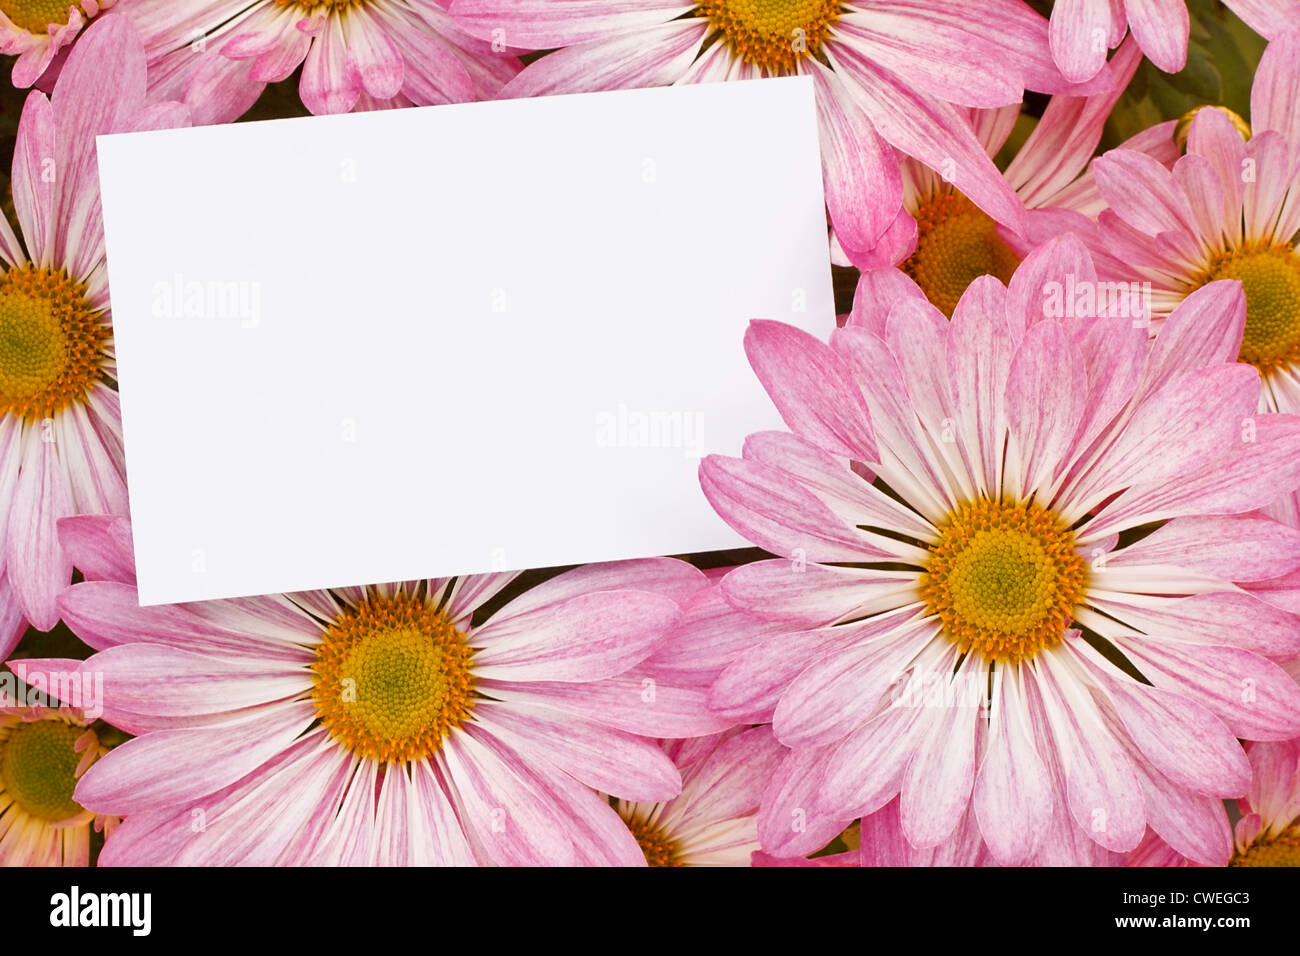 Chrysanthème rose bouquet floral background with blank tag souhaits pour insérer votre message marketing ou les fleuristes branding Banque D'Images